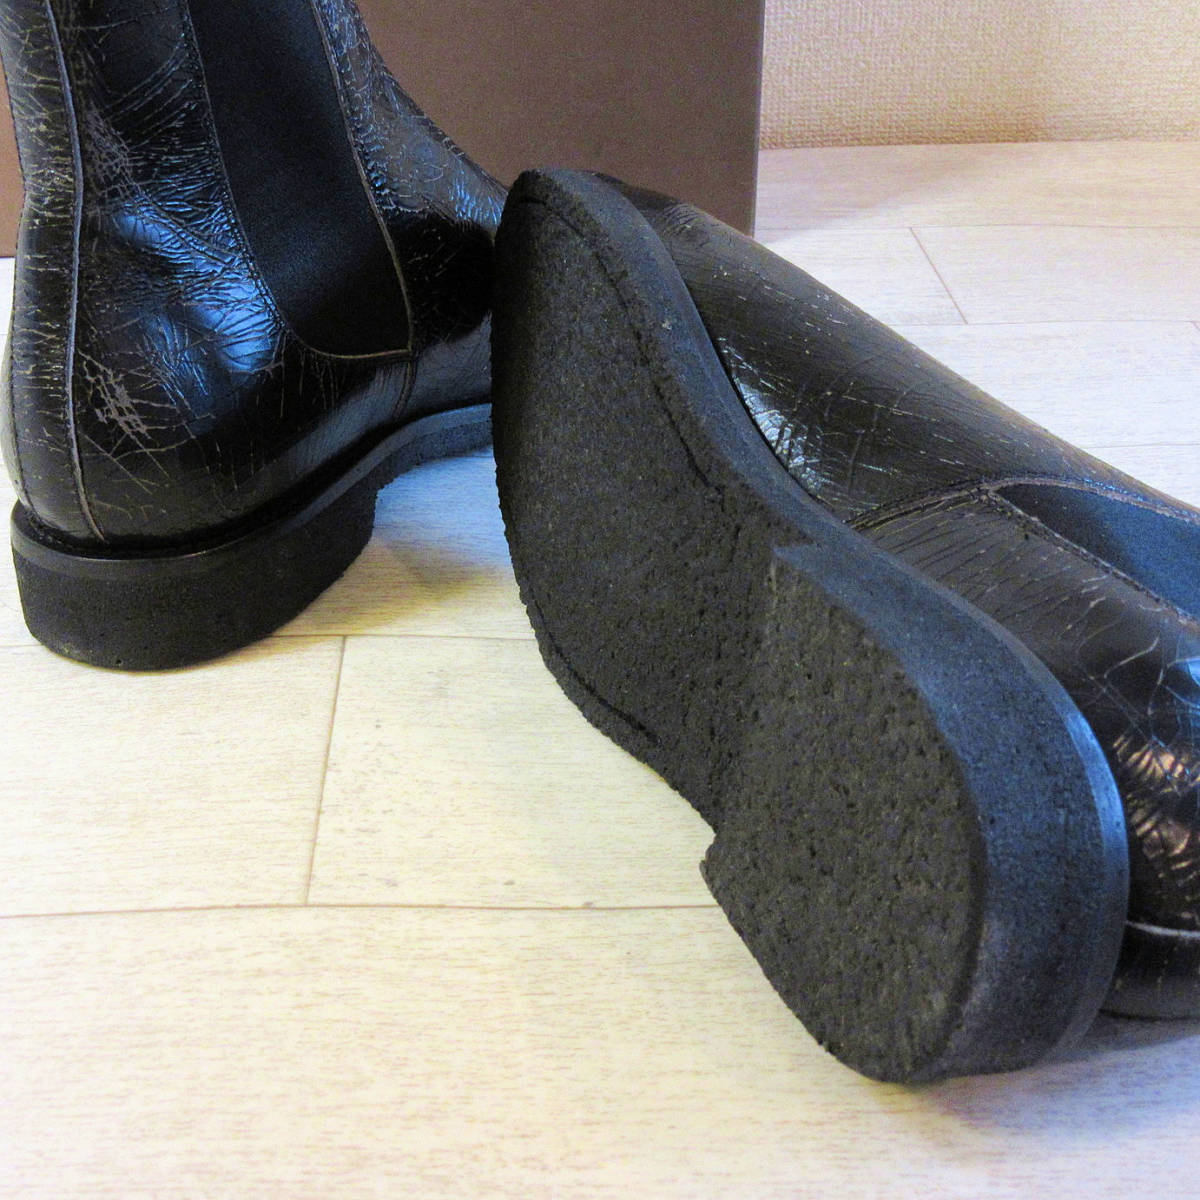 新品 BUTTERO ブッテロ 本革 サイドゴアブーツ レザーブーツ ヴィンテージ加工 クラック イタリア製 革靴 ブラック 黒 メンズ 43